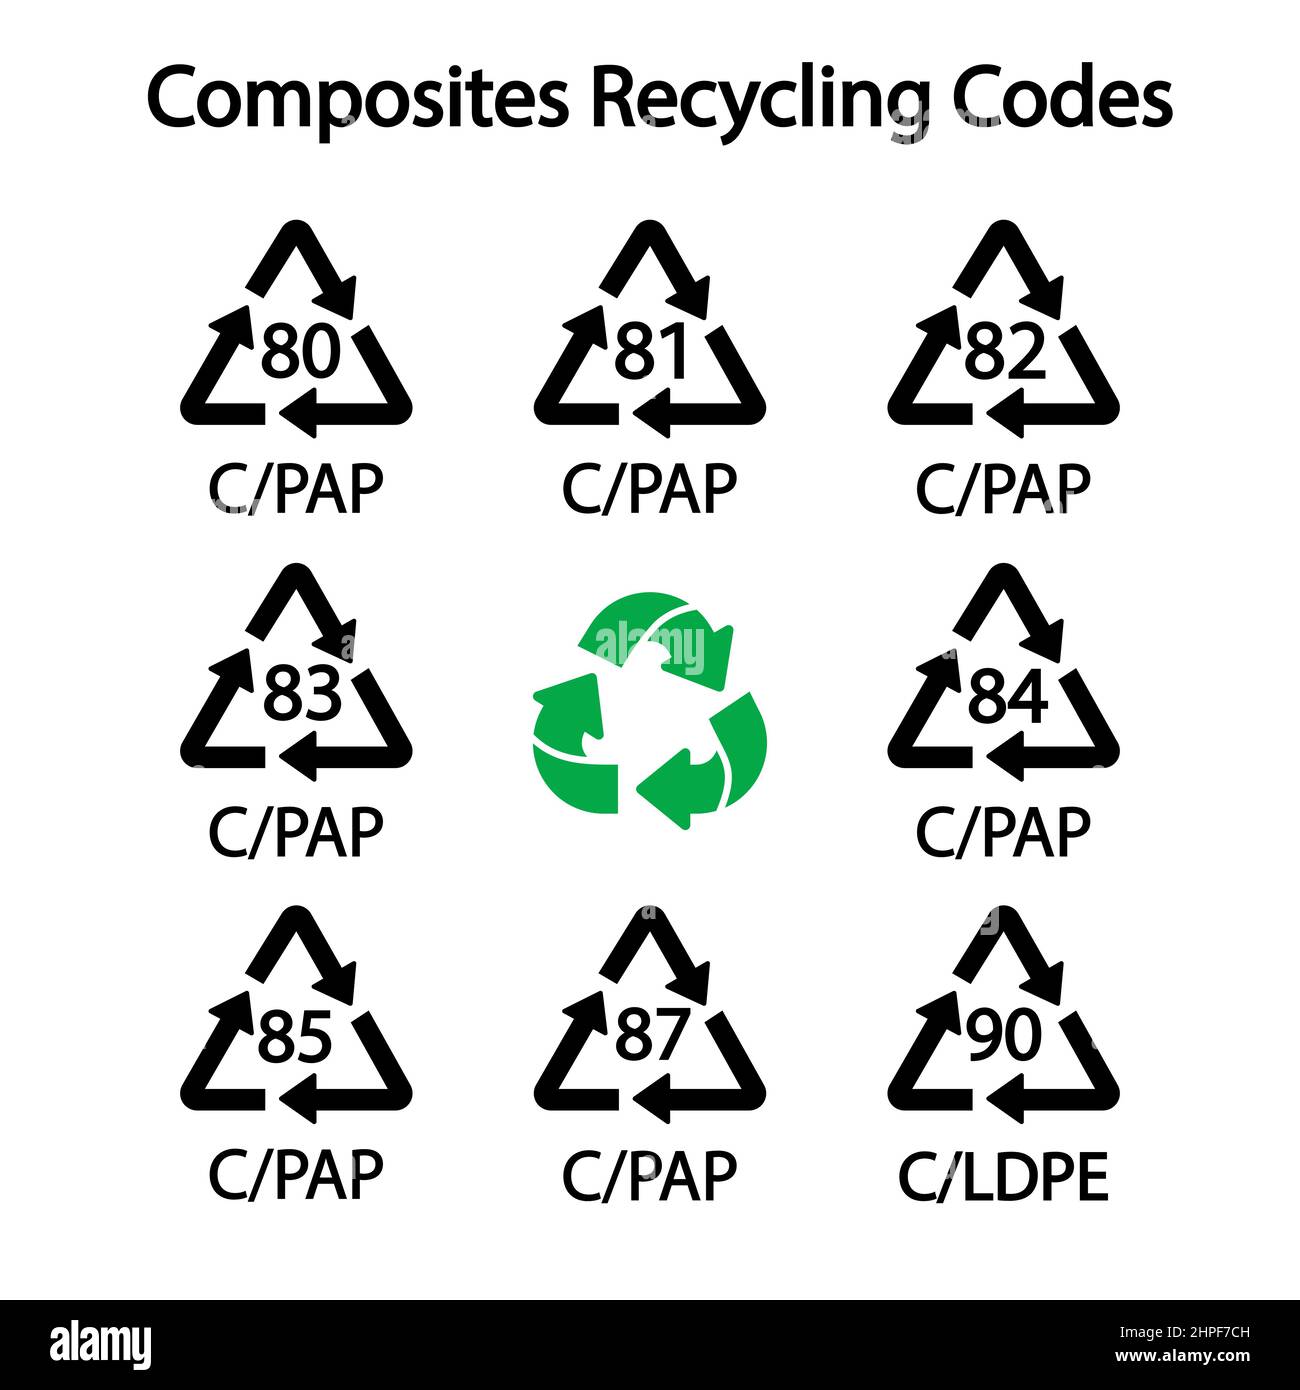 Composites Recycling Codes Einfache Zeichen für die Kennzeichnung. Vektorgrafik Stock Vektor